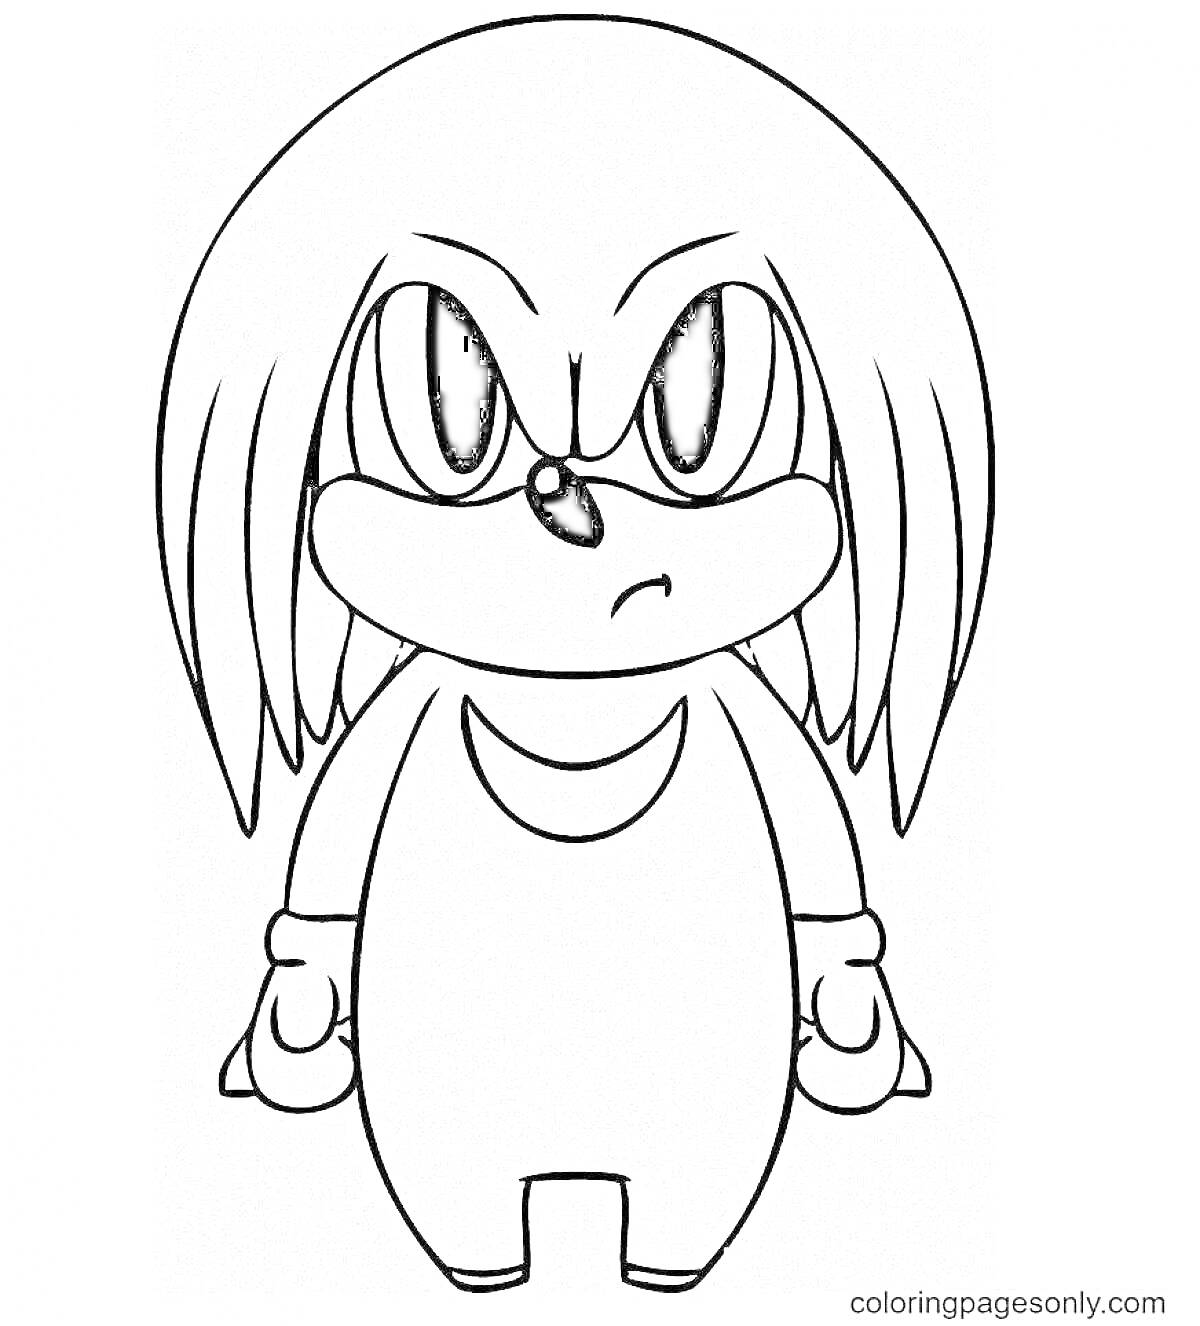 Раскраска с изображением сердитого персонажа с длинными висячими косичками и длинным туловищем.